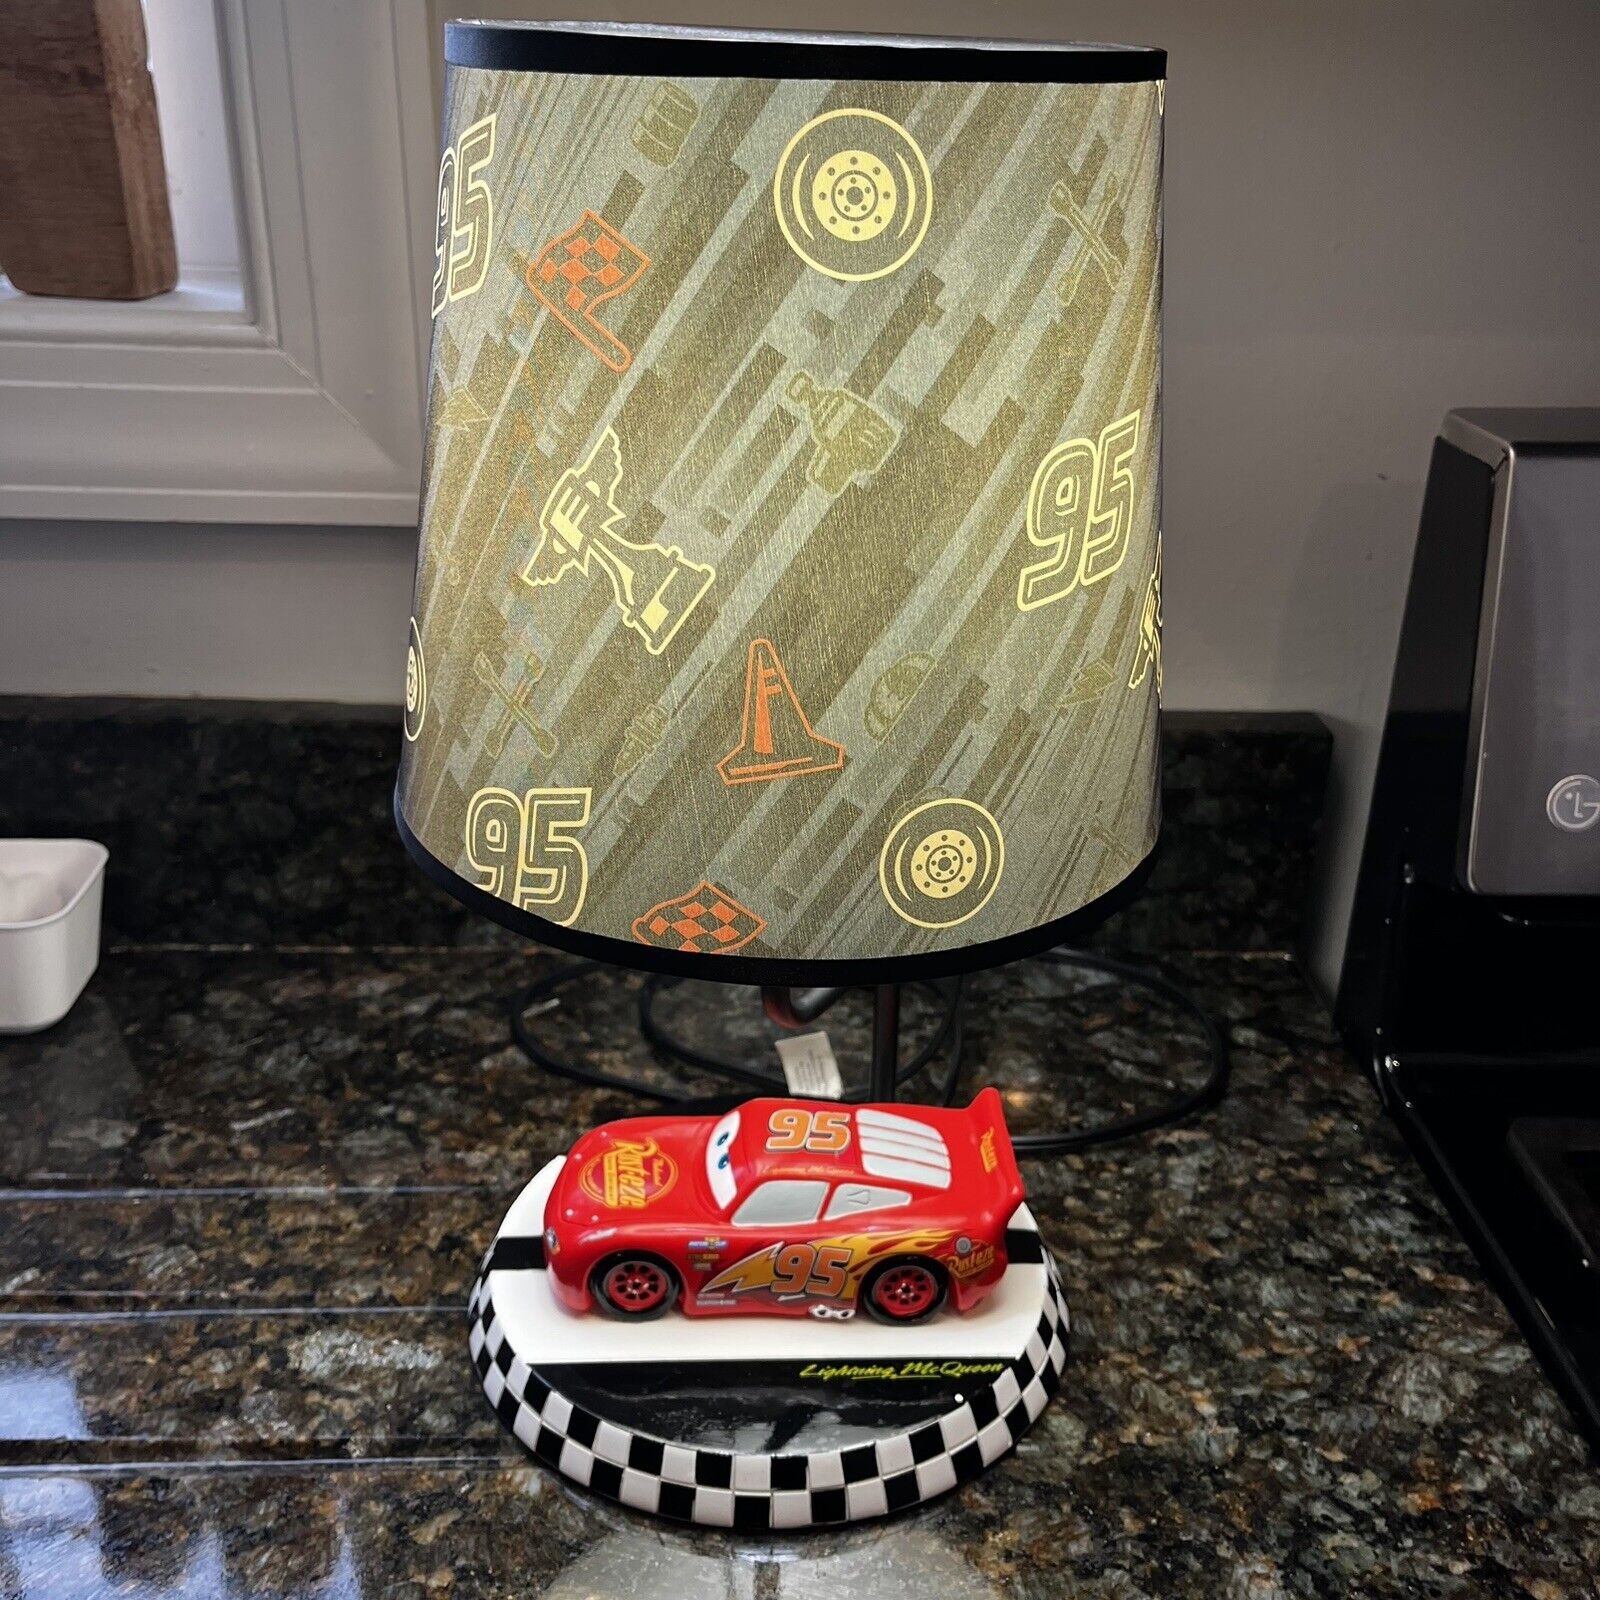 Disney Cars 3 Lightning McQueen Desk Table Bedside Lamp Checkered Flag Base #95